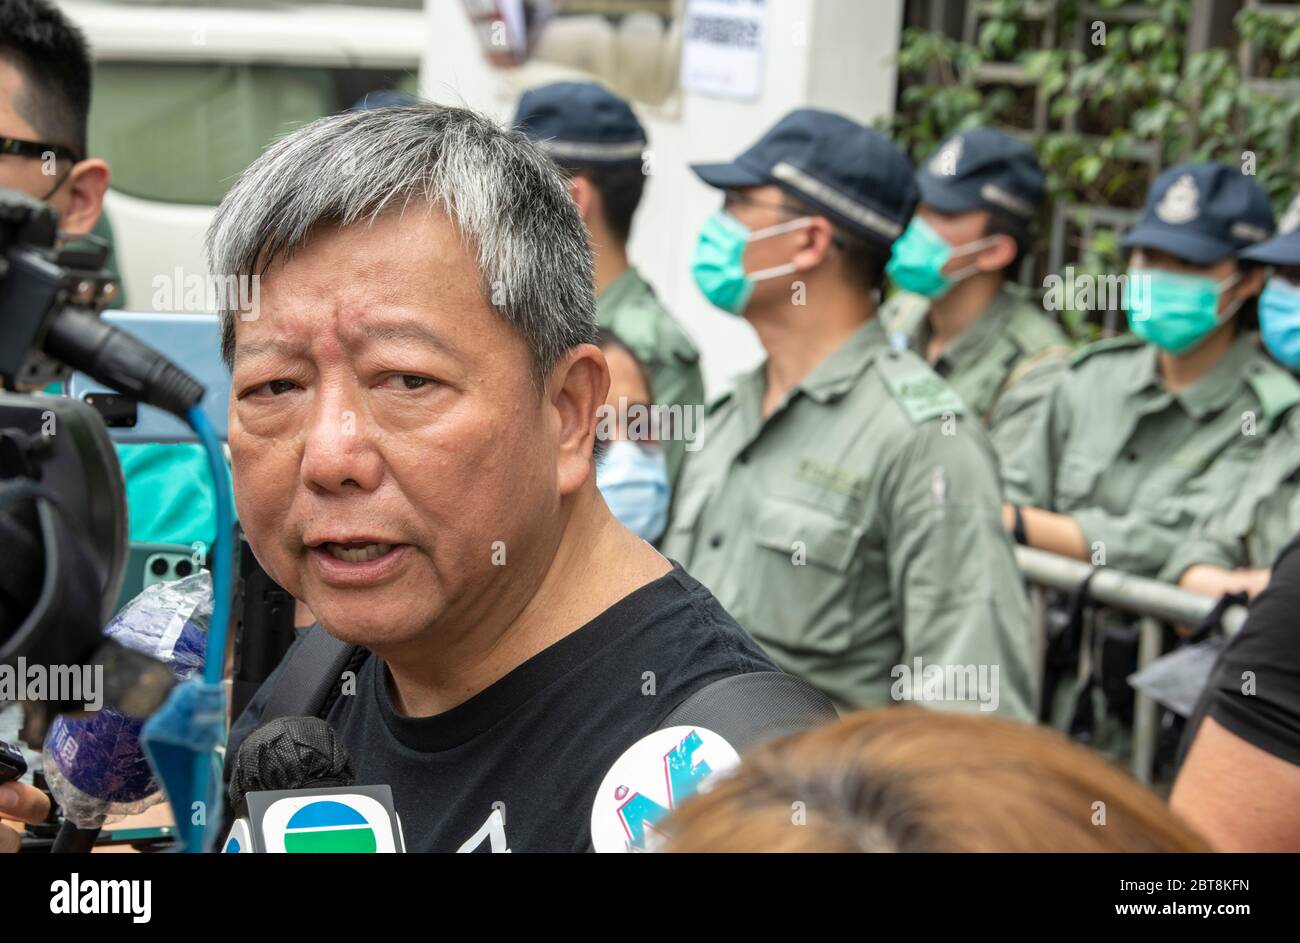 HONG KONG, HONG KONG SAR, CHINE : 24 MAI 2020. Avec cette année, le 4 juin événement interdit, les gens participent à une course de 10 km pour commémorer le 31 anniversaire du mouvement démocratique en Chine de 1989 qui s'est terminé avec l'incident de la place Tienanmen. La course prend des sites importants pour la lutte pour la démocratie à Hong Kong.LEE CHEUK-YAN (c), ancien législateur et l'un des "Democracy 15" arrêtés, parle à l'extérieur du Bureau de liaison du Gouvernement populaire central de Hong Kong RAS, Sai Yin Pun. La police fait sentir leur présence. Alamy Live News/Jayne Russell Banque D'Images